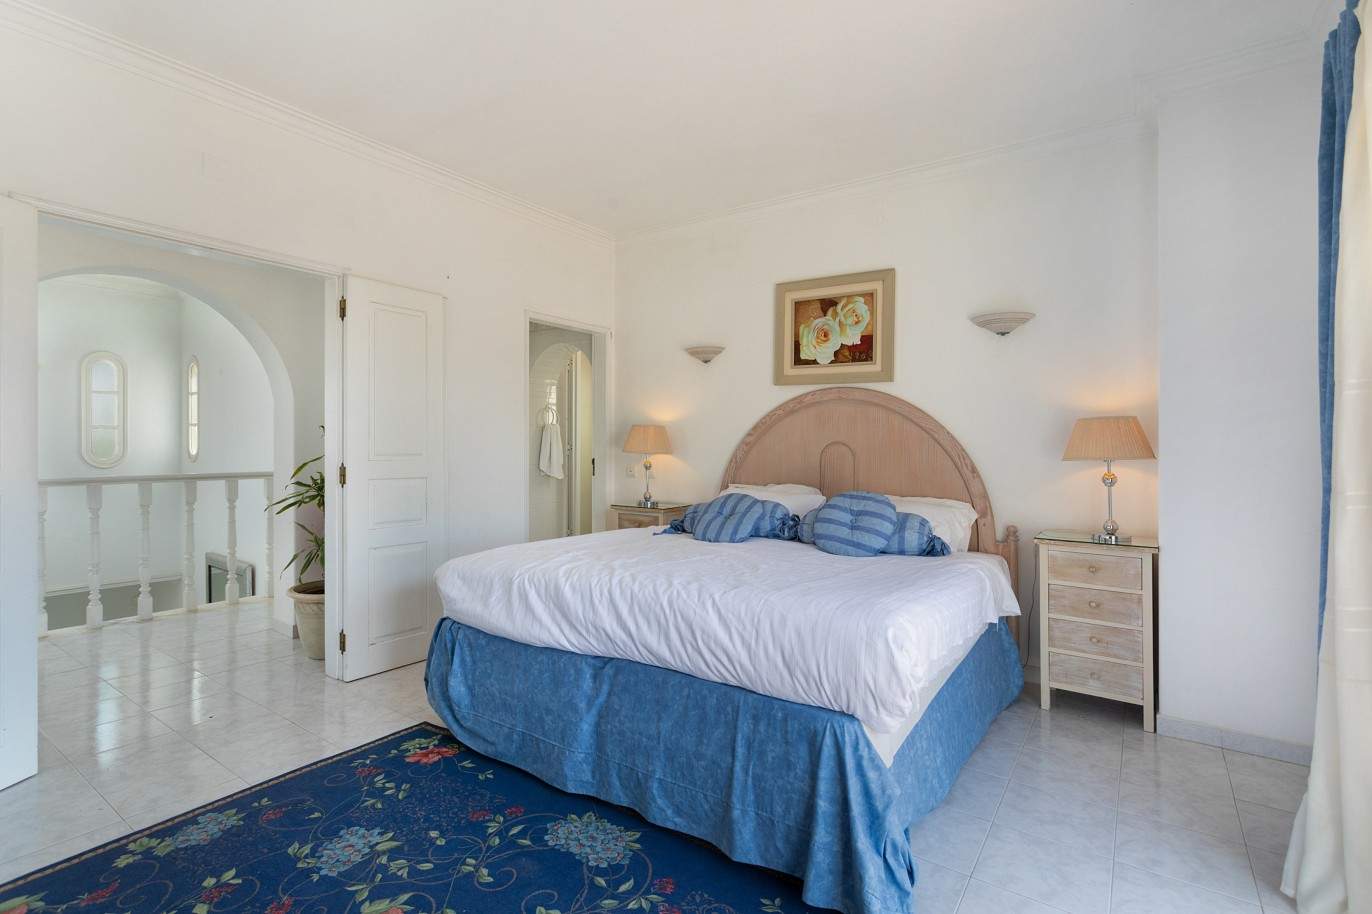 5 Bedroom Villa with pool for sale in Vilamoura, Algarve_212549